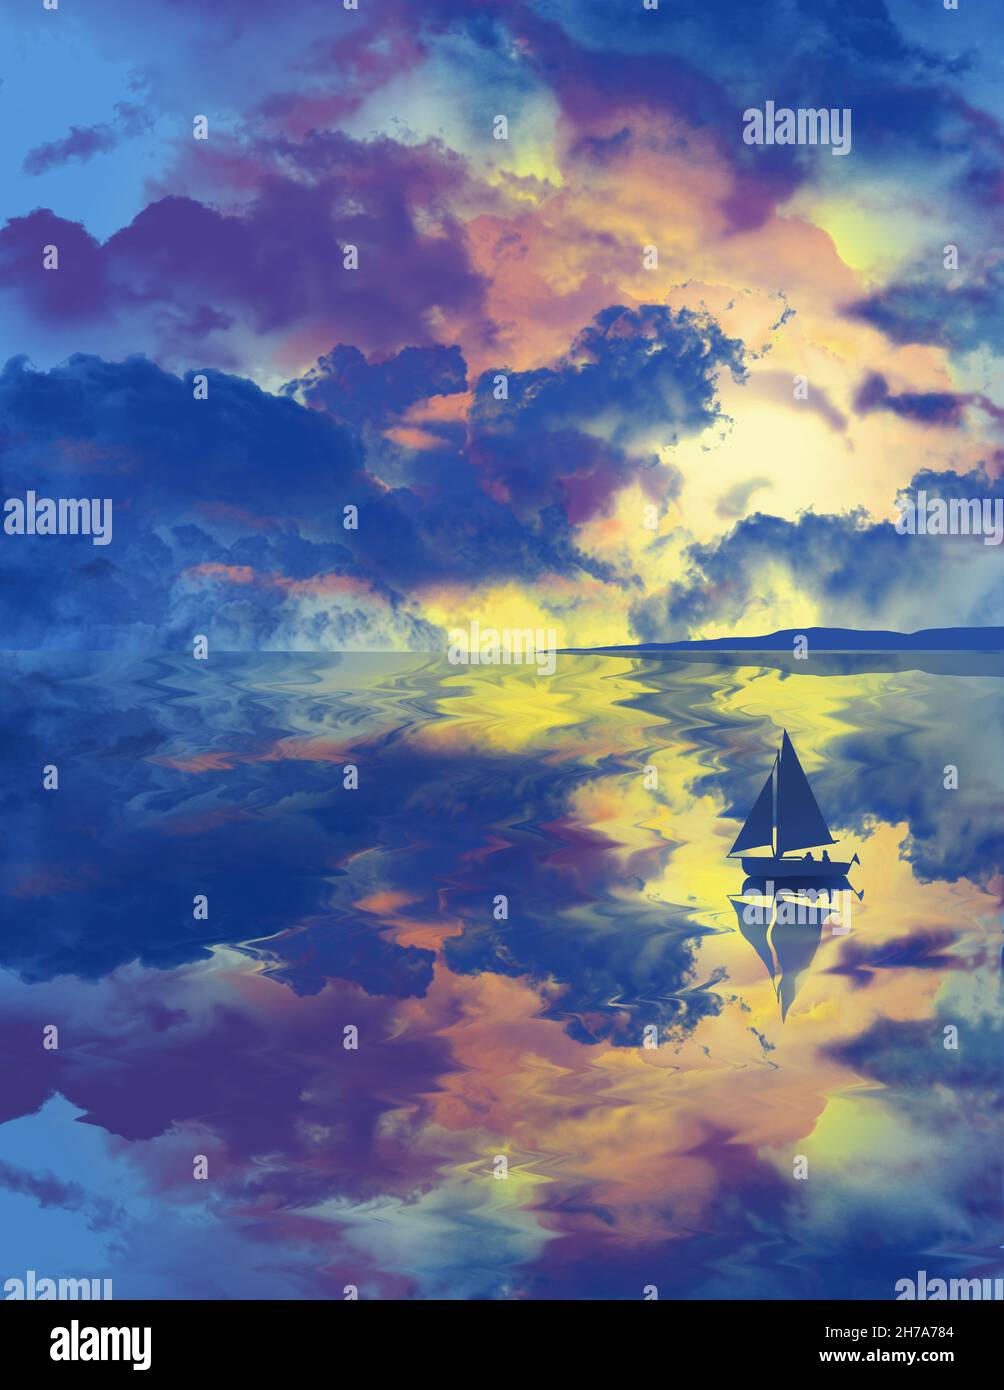 In dieser 3-d-Darstellung eines Segelbootes auf dem Wasser spiegelt sich in der Oberfläche eines Sees ein Sonnenuntergang wider. Stockfoto